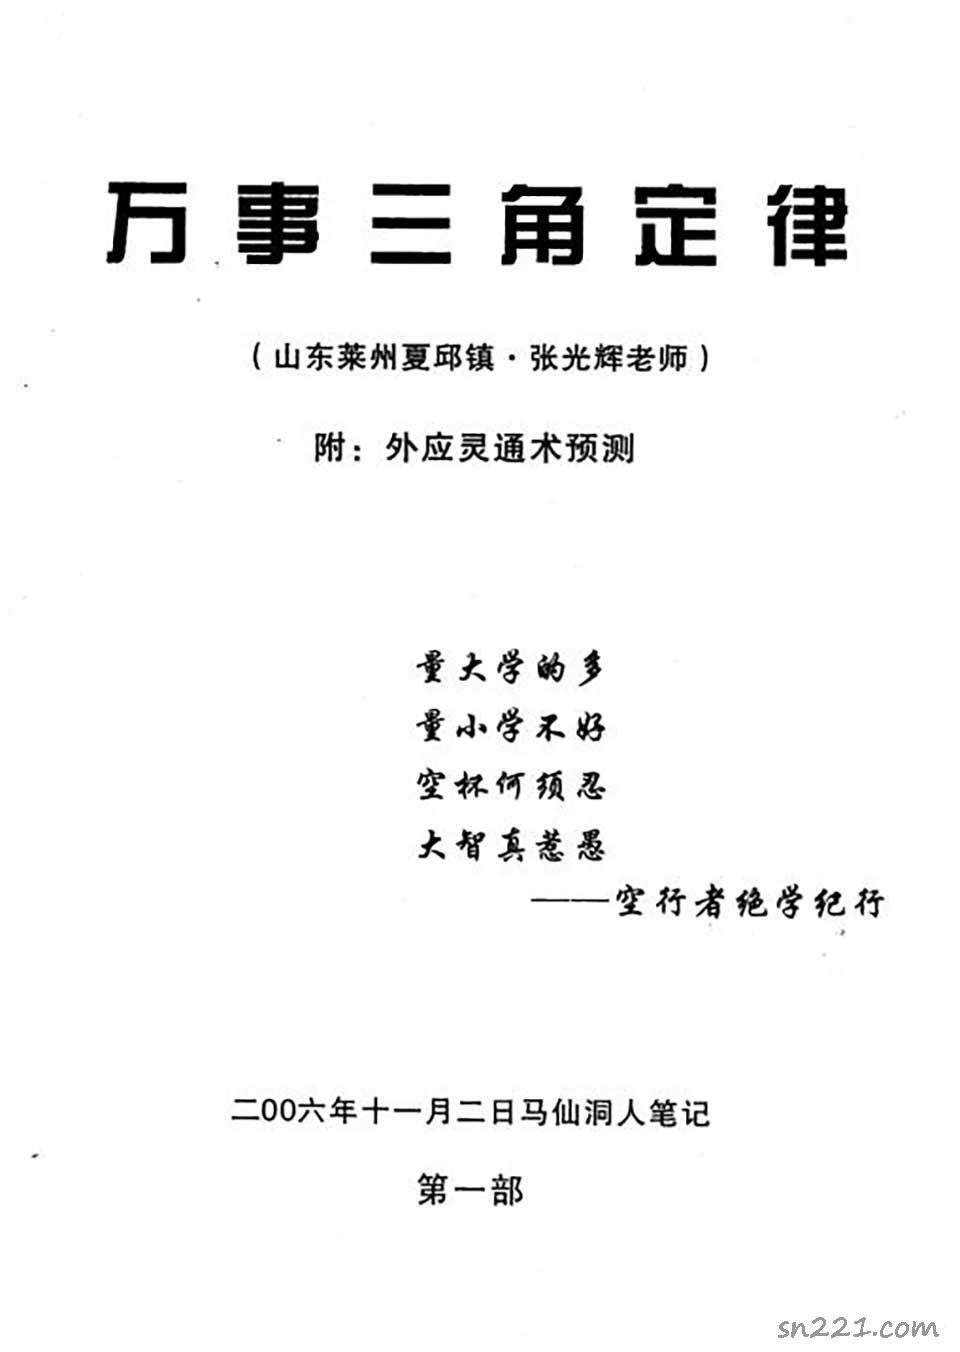 張光輝-馬仙洞人筆記整理版83頁.pdf